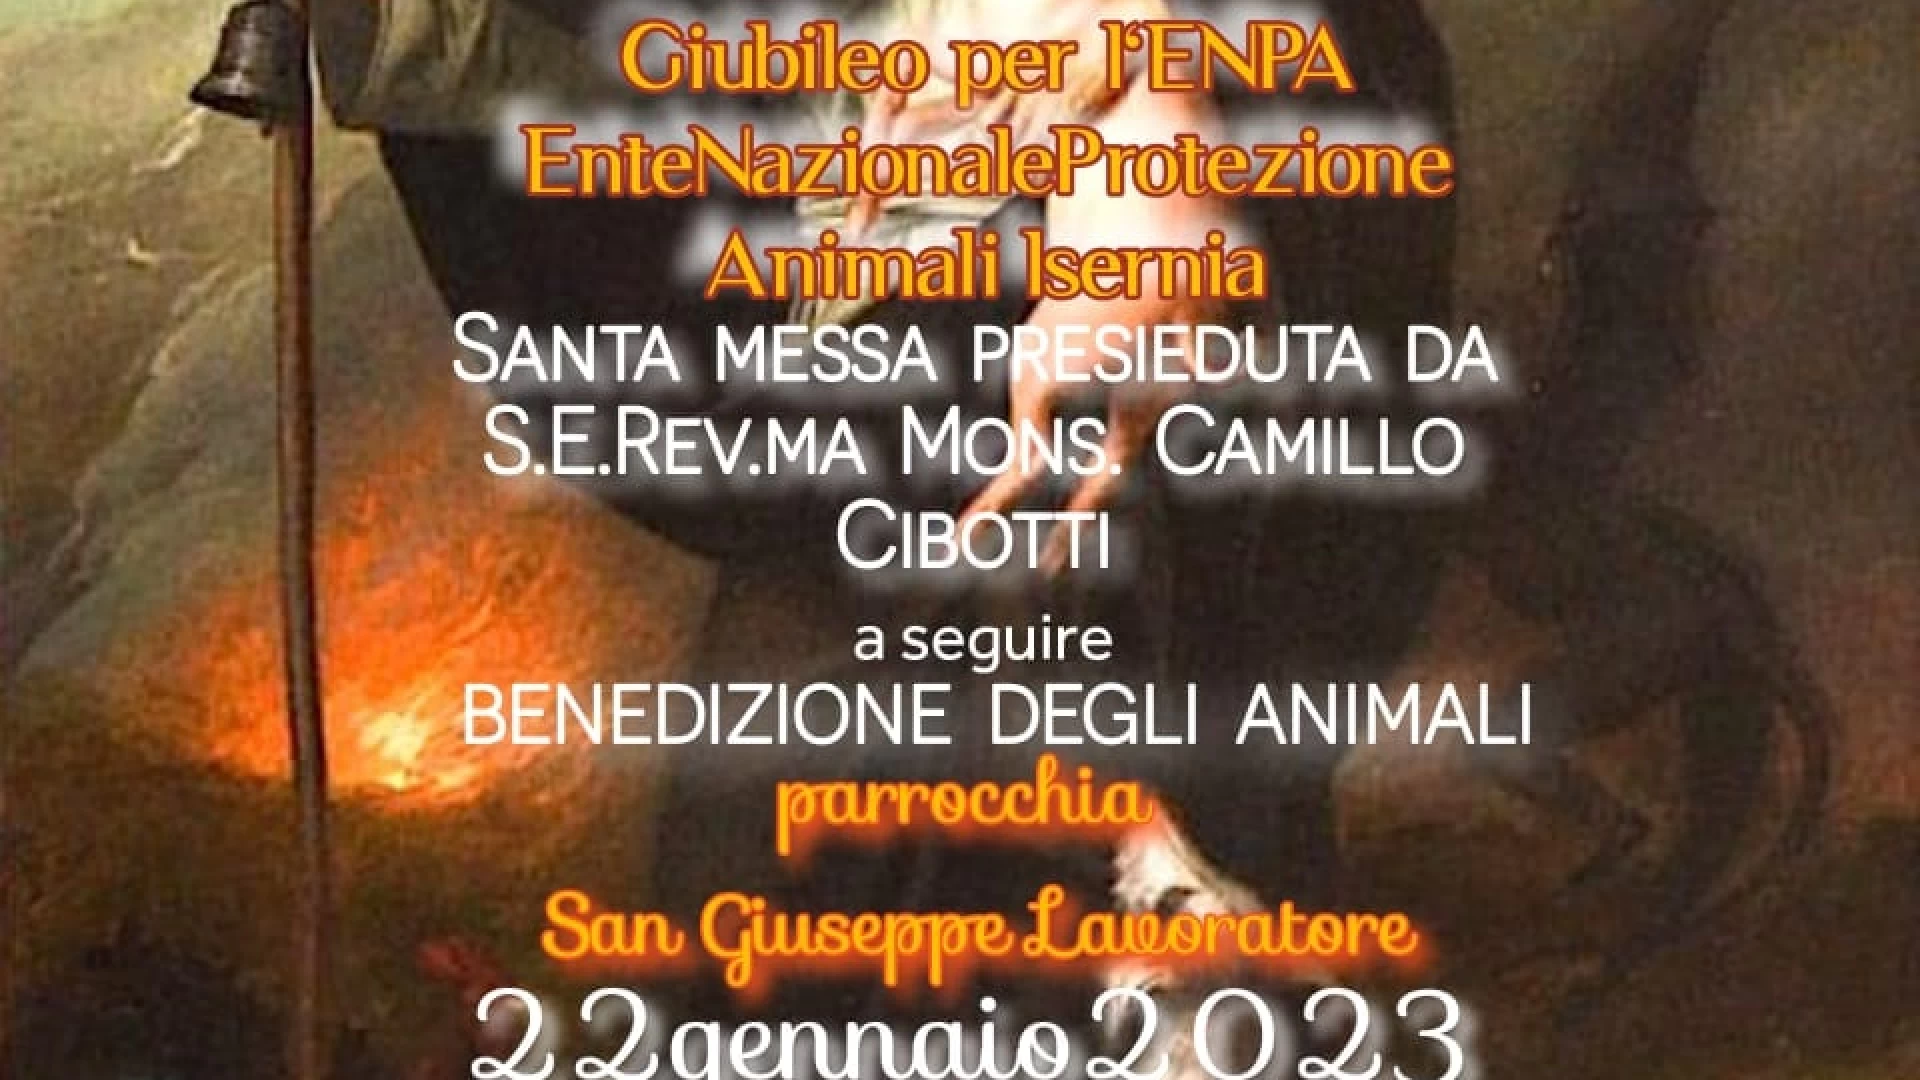 Isernia: in città il giubileo dell’Enpa, ente nazionale protezione animali.